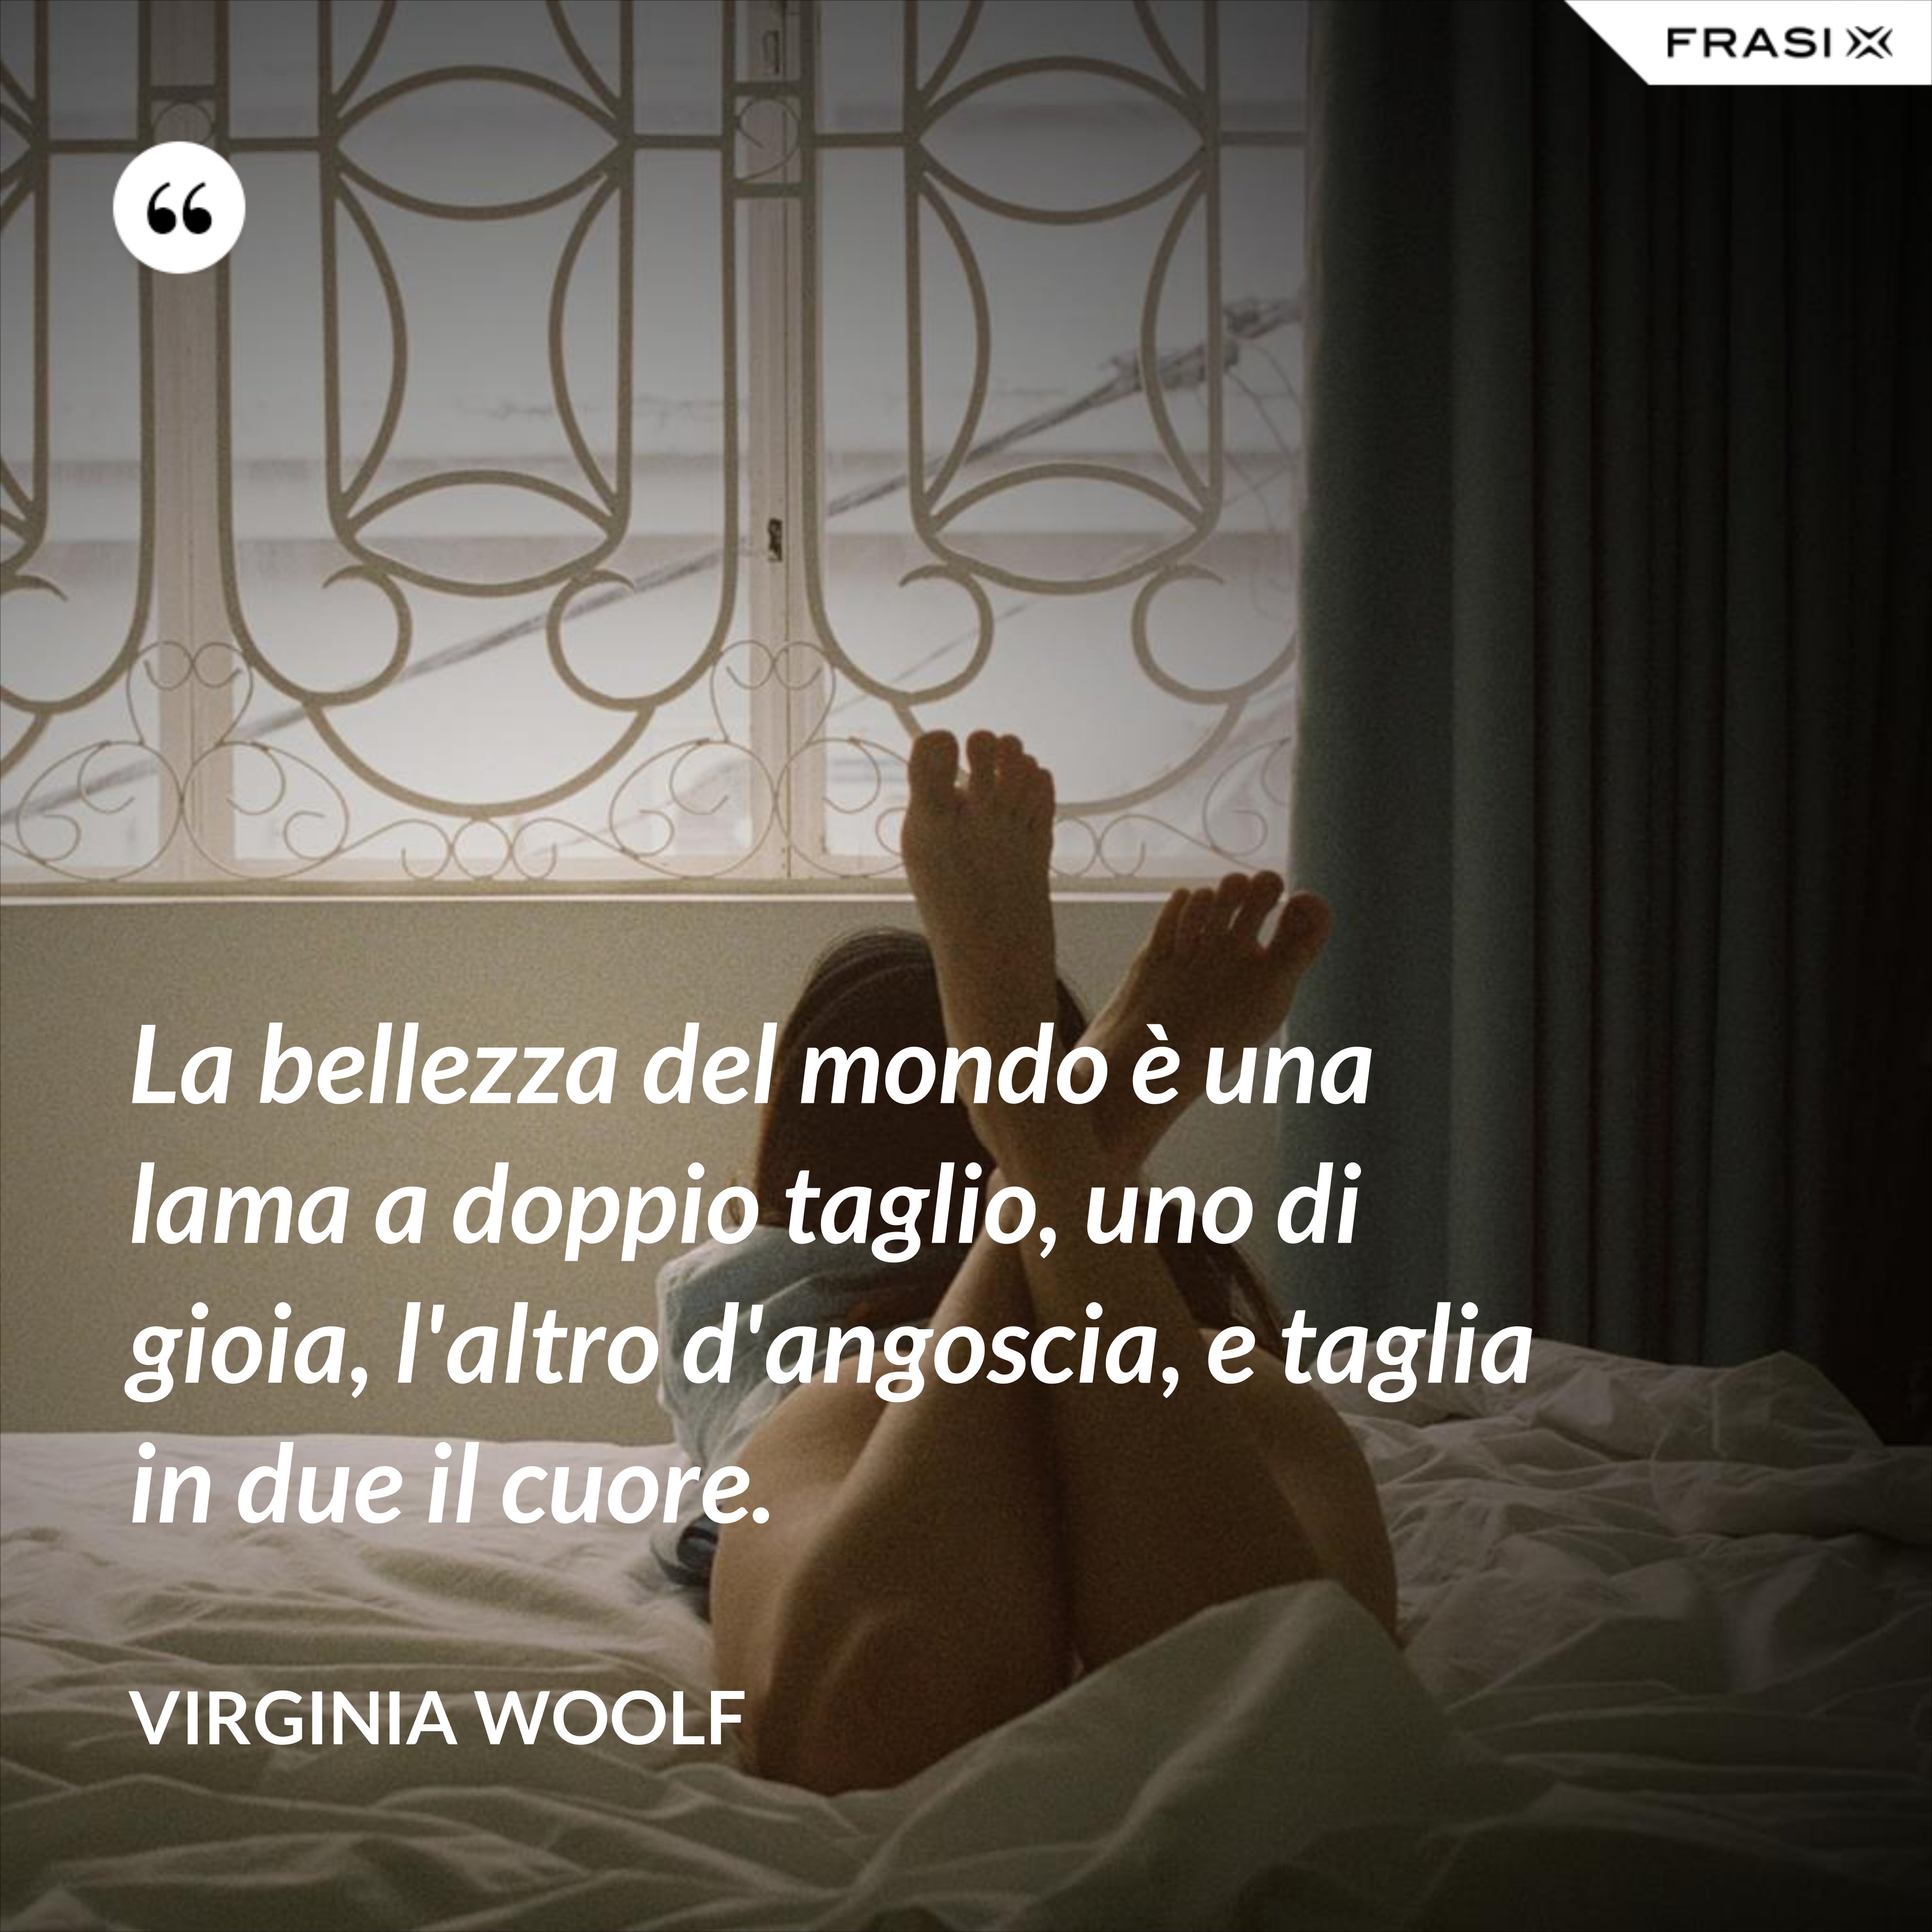 La bellezza del mondo è una lama a doppio taglio, uno di gioia, l'altro d'angoscia, e taglia in due il cuore. - Virginia Woolf